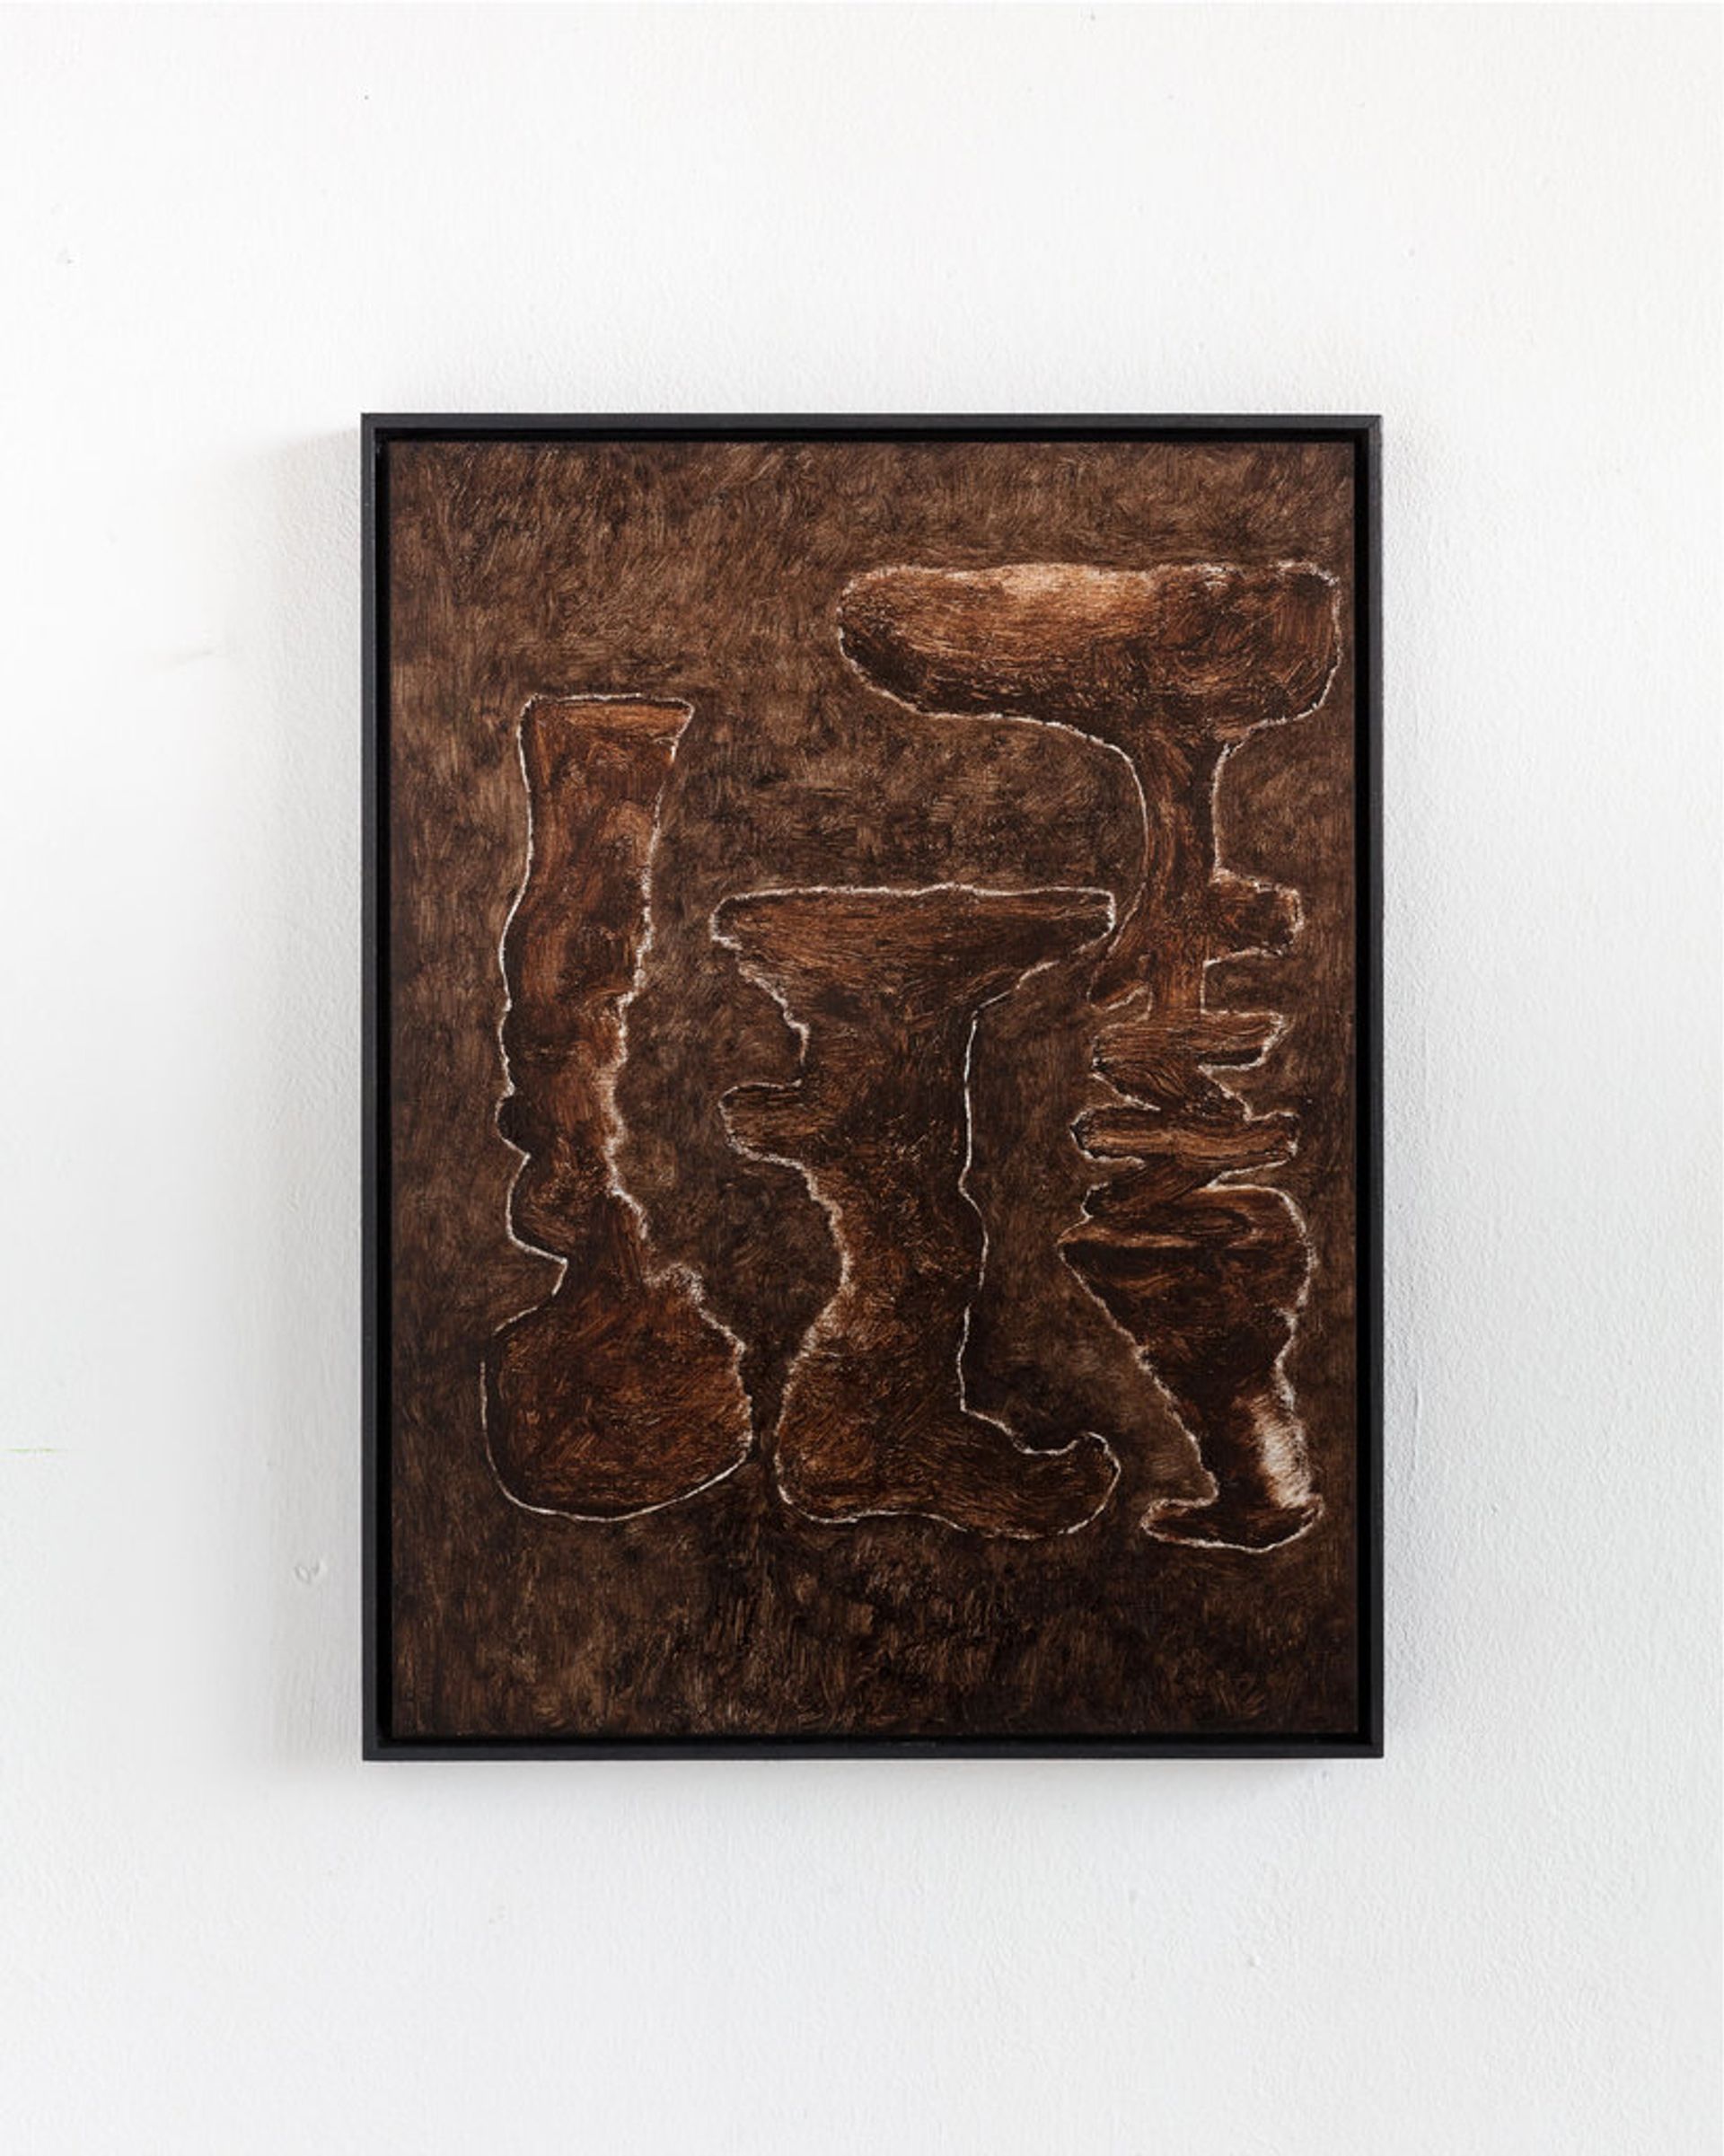 Veronika Hilger, Untitled, 2019, oil on paper on MDF, framed, 39.5 × 29.5 cm